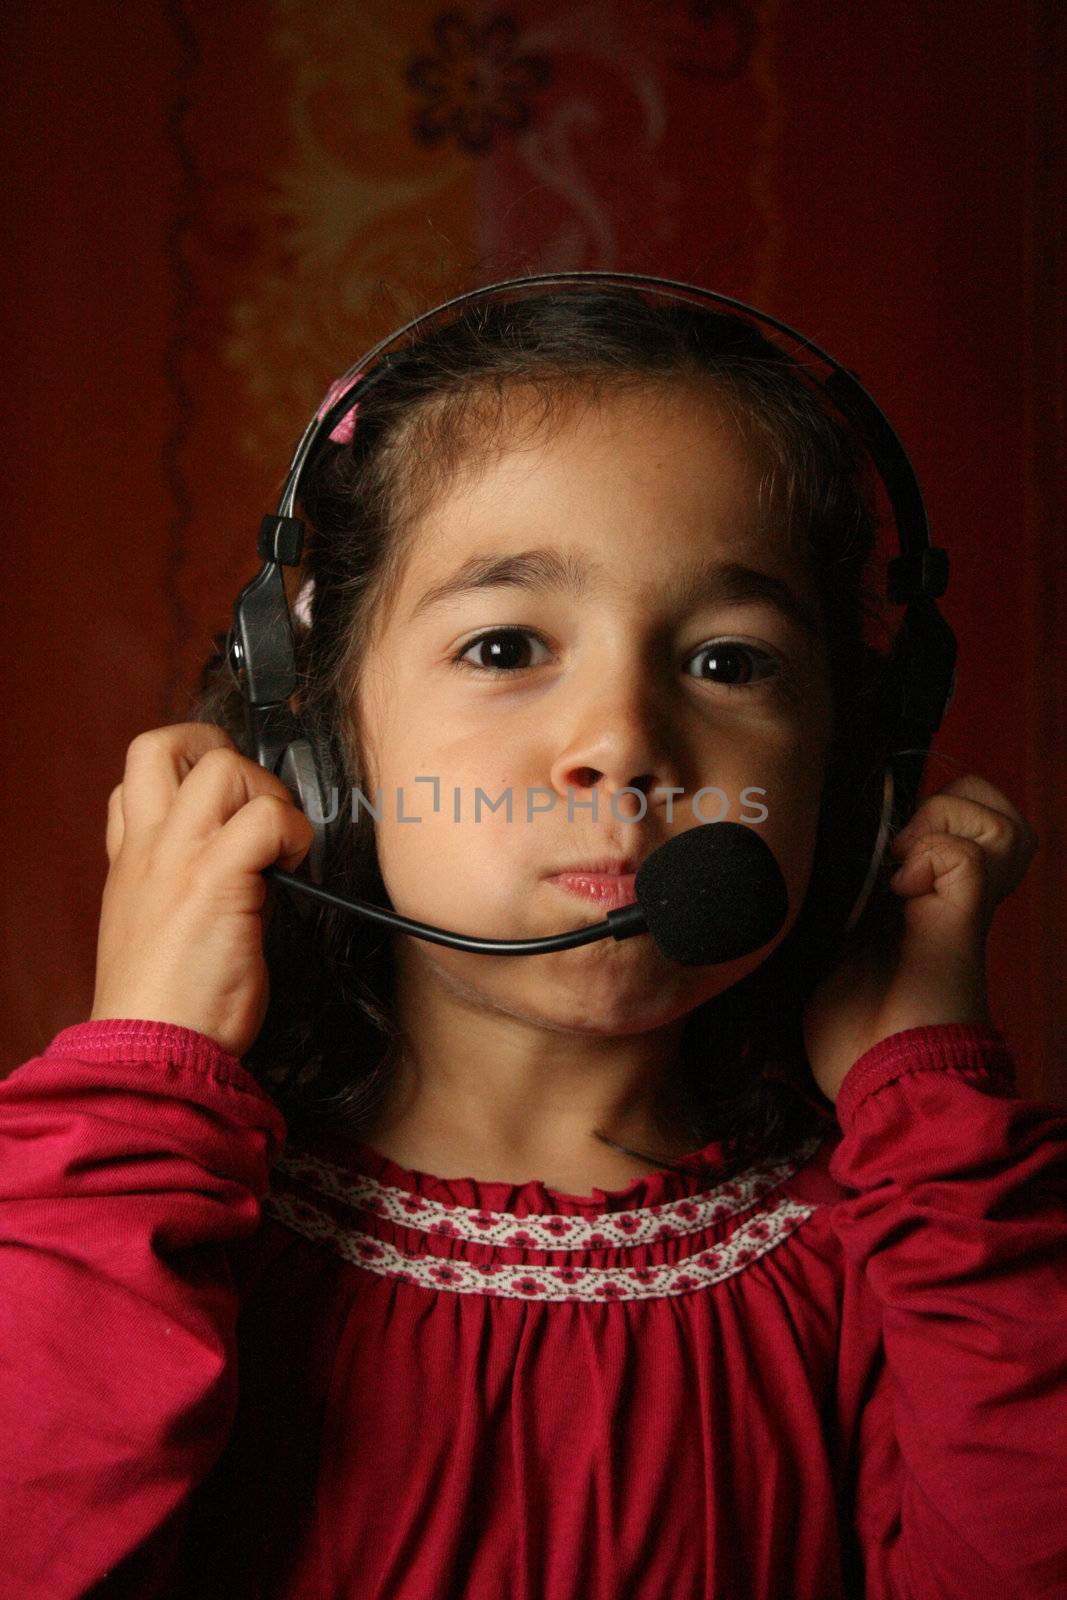 Smiling child wearing headset